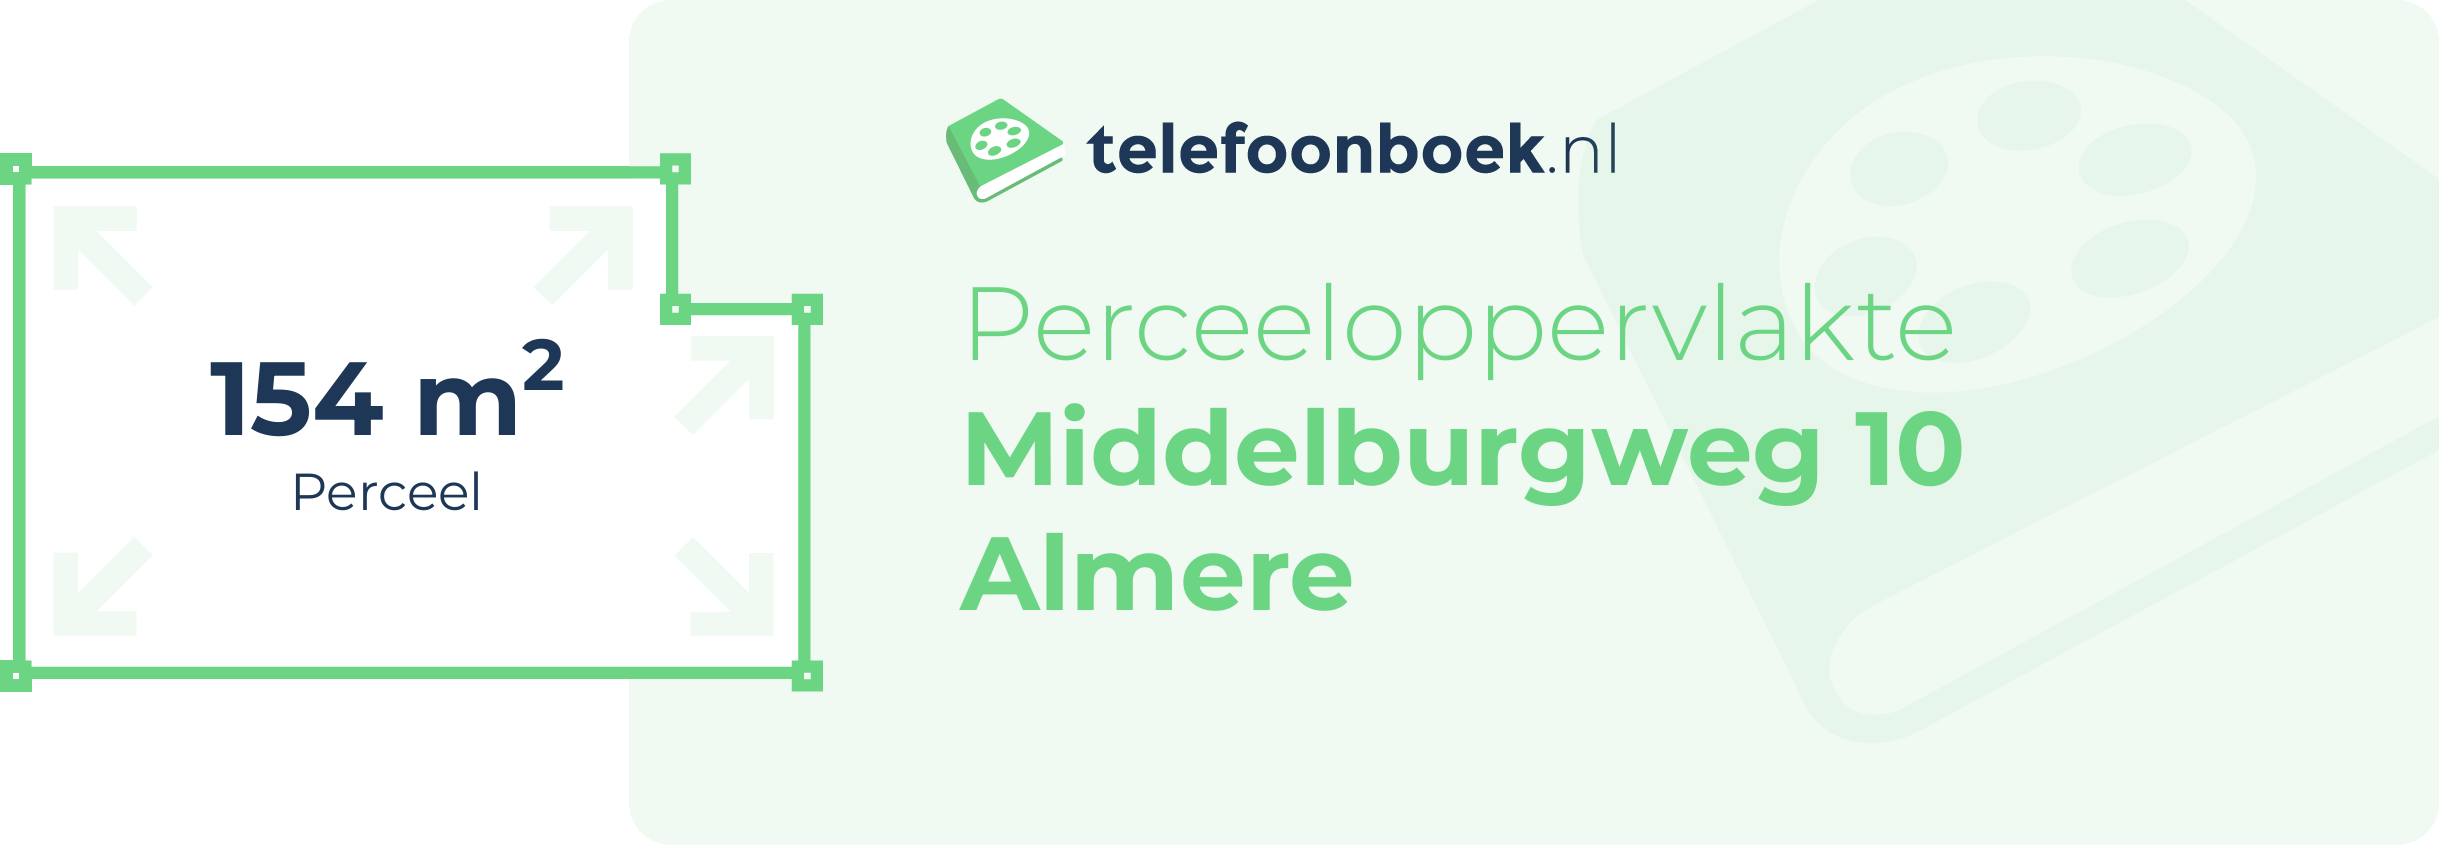 Perceeloppervlakte Middelburgweg 10 Almere